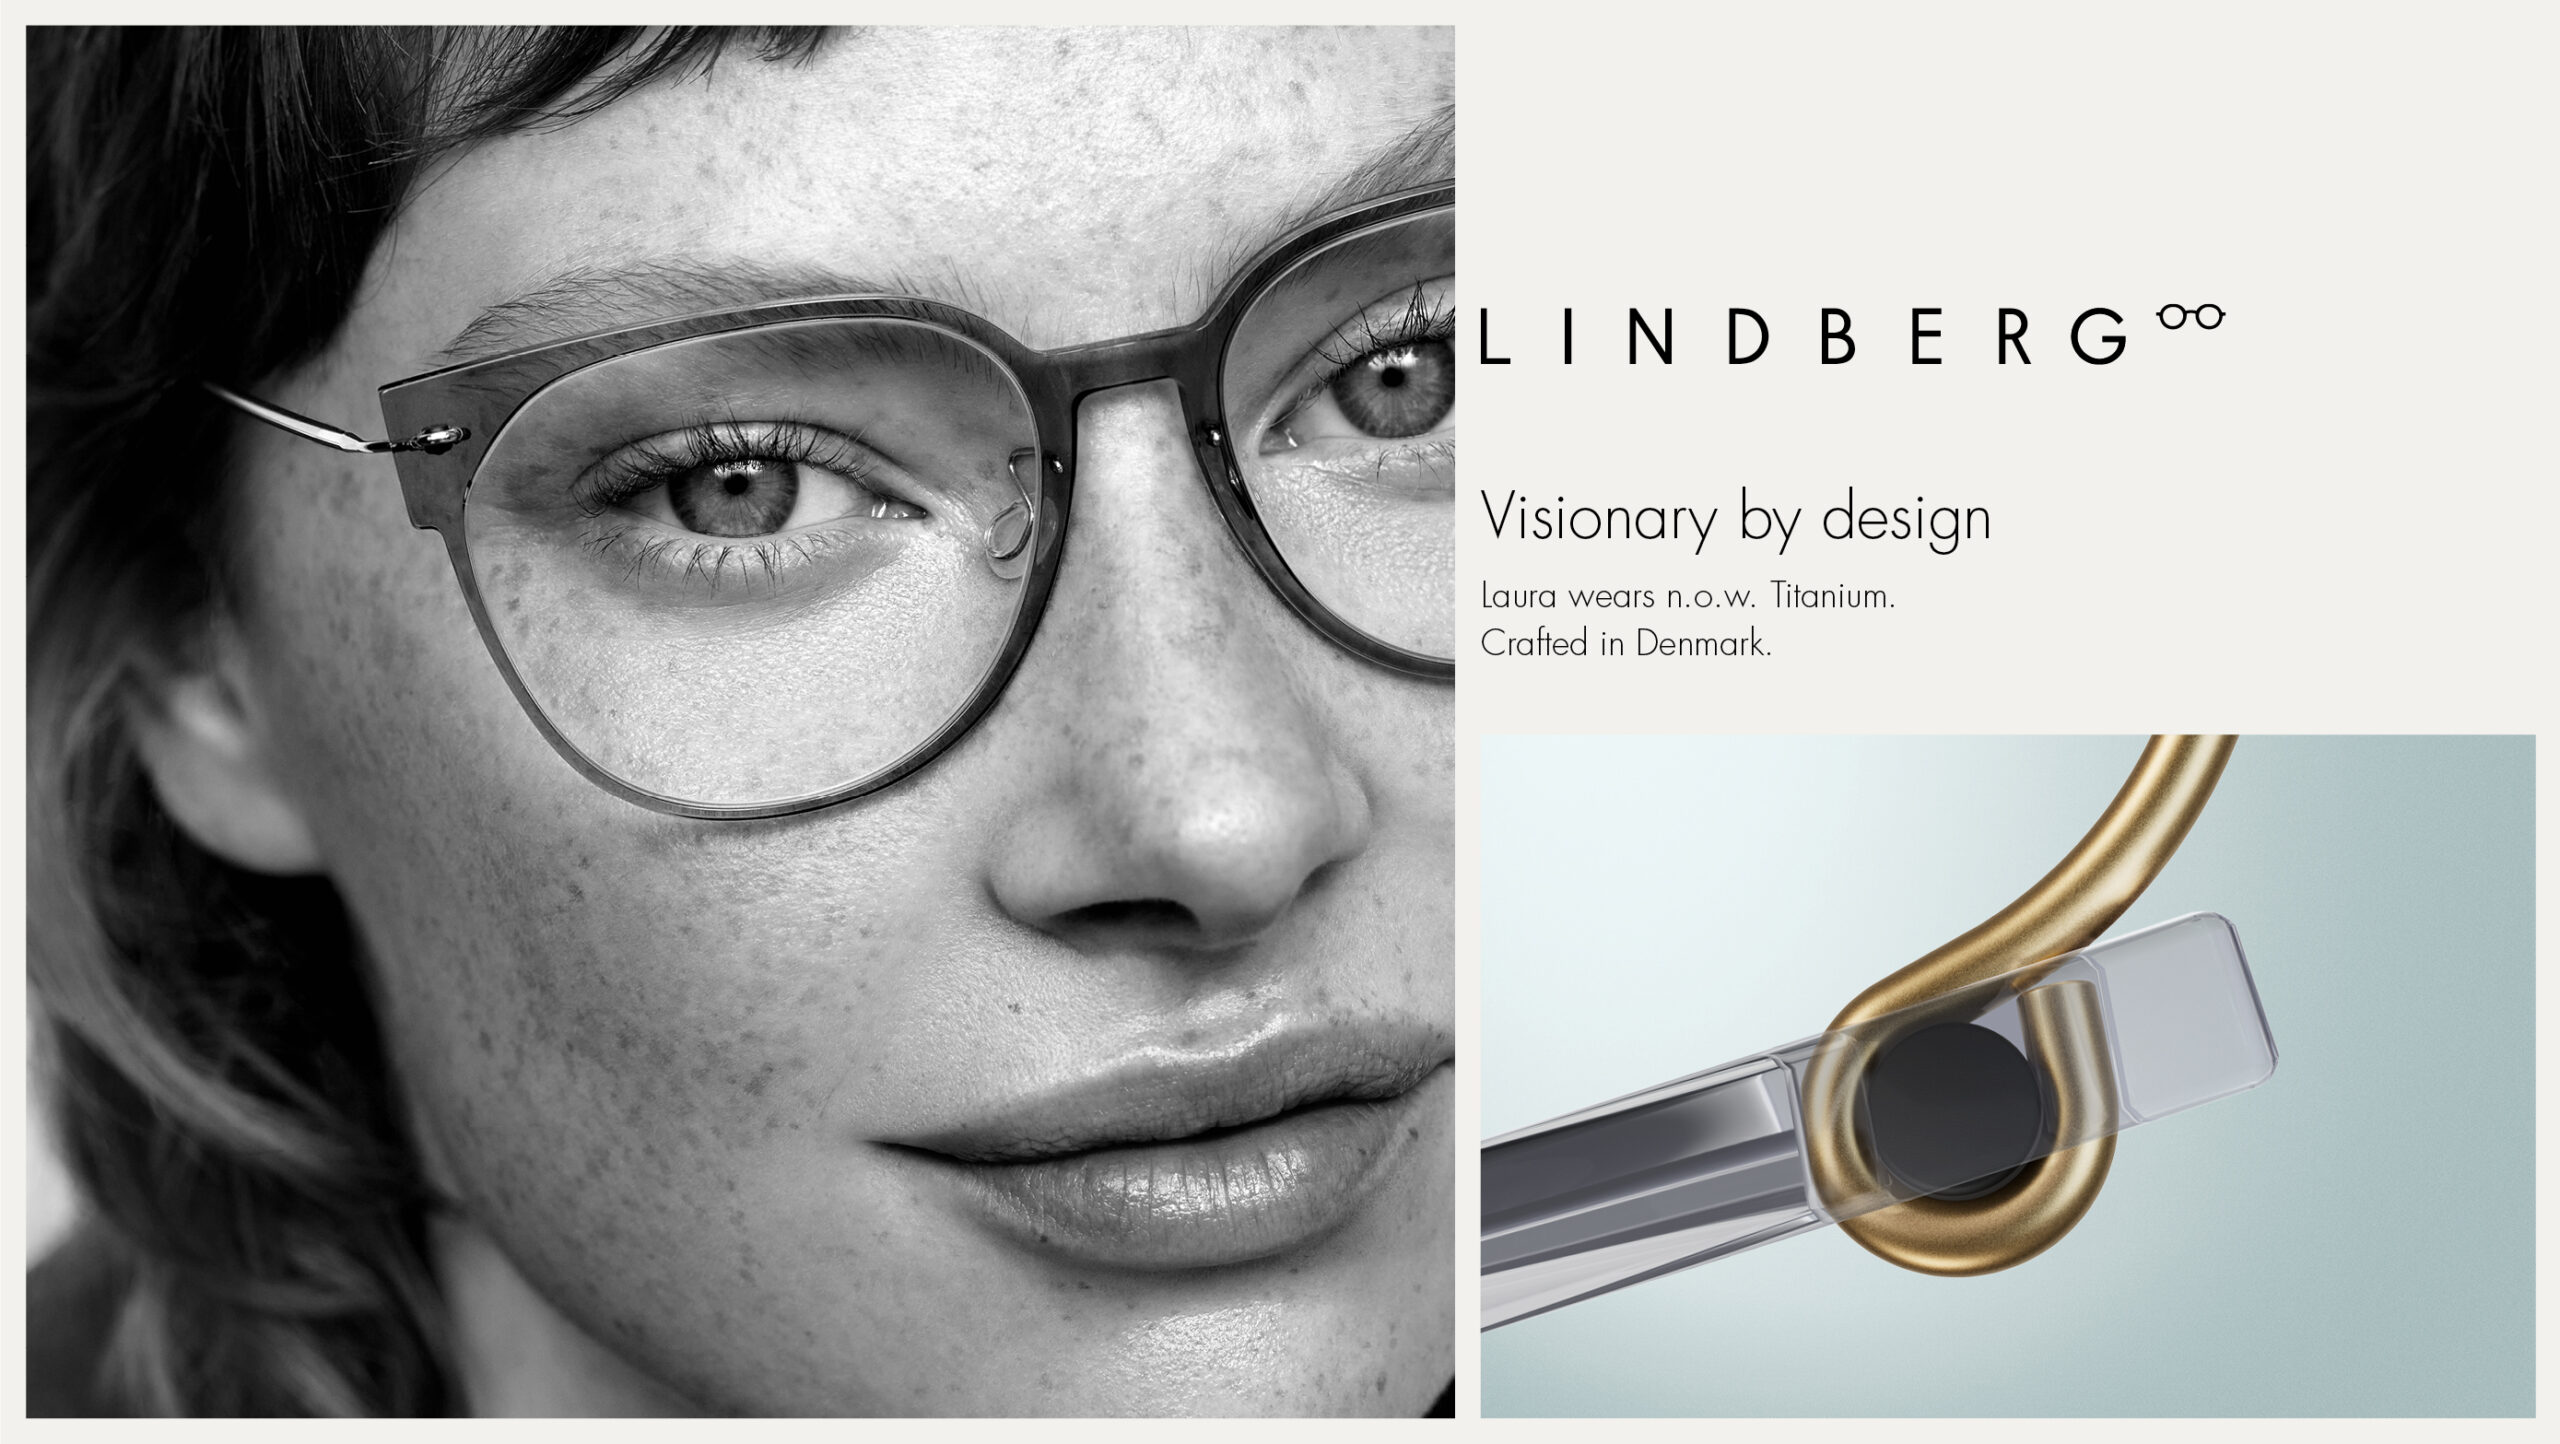 Werbemotiv von LINDBERG-Brillen in Duisburg